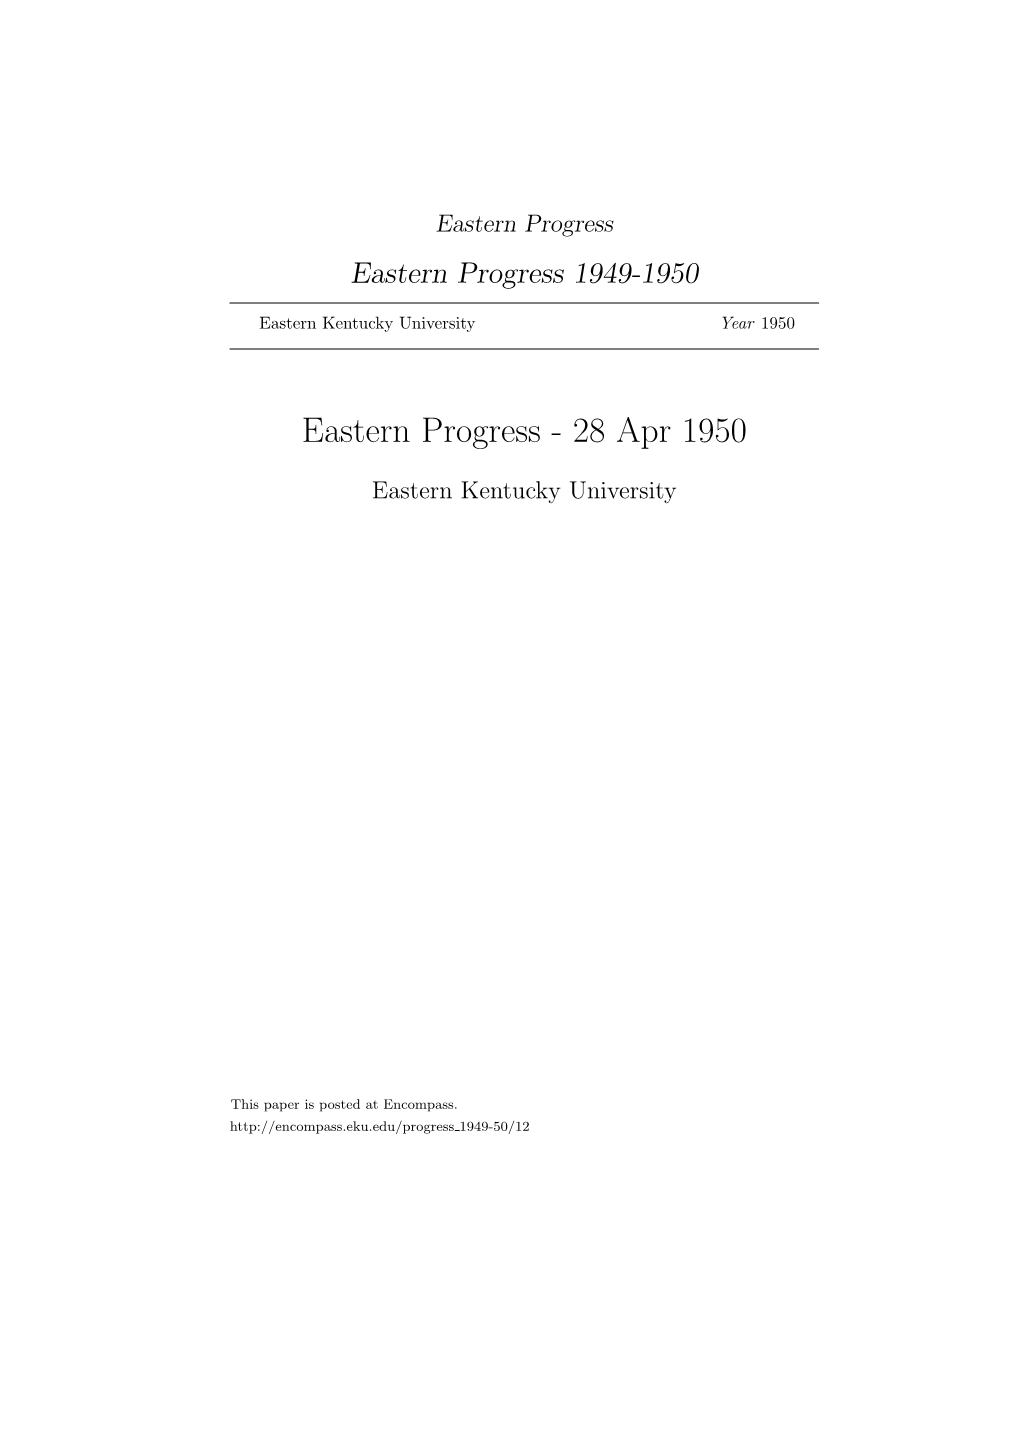 Eastern Progress Eastern Progress 1949-1950